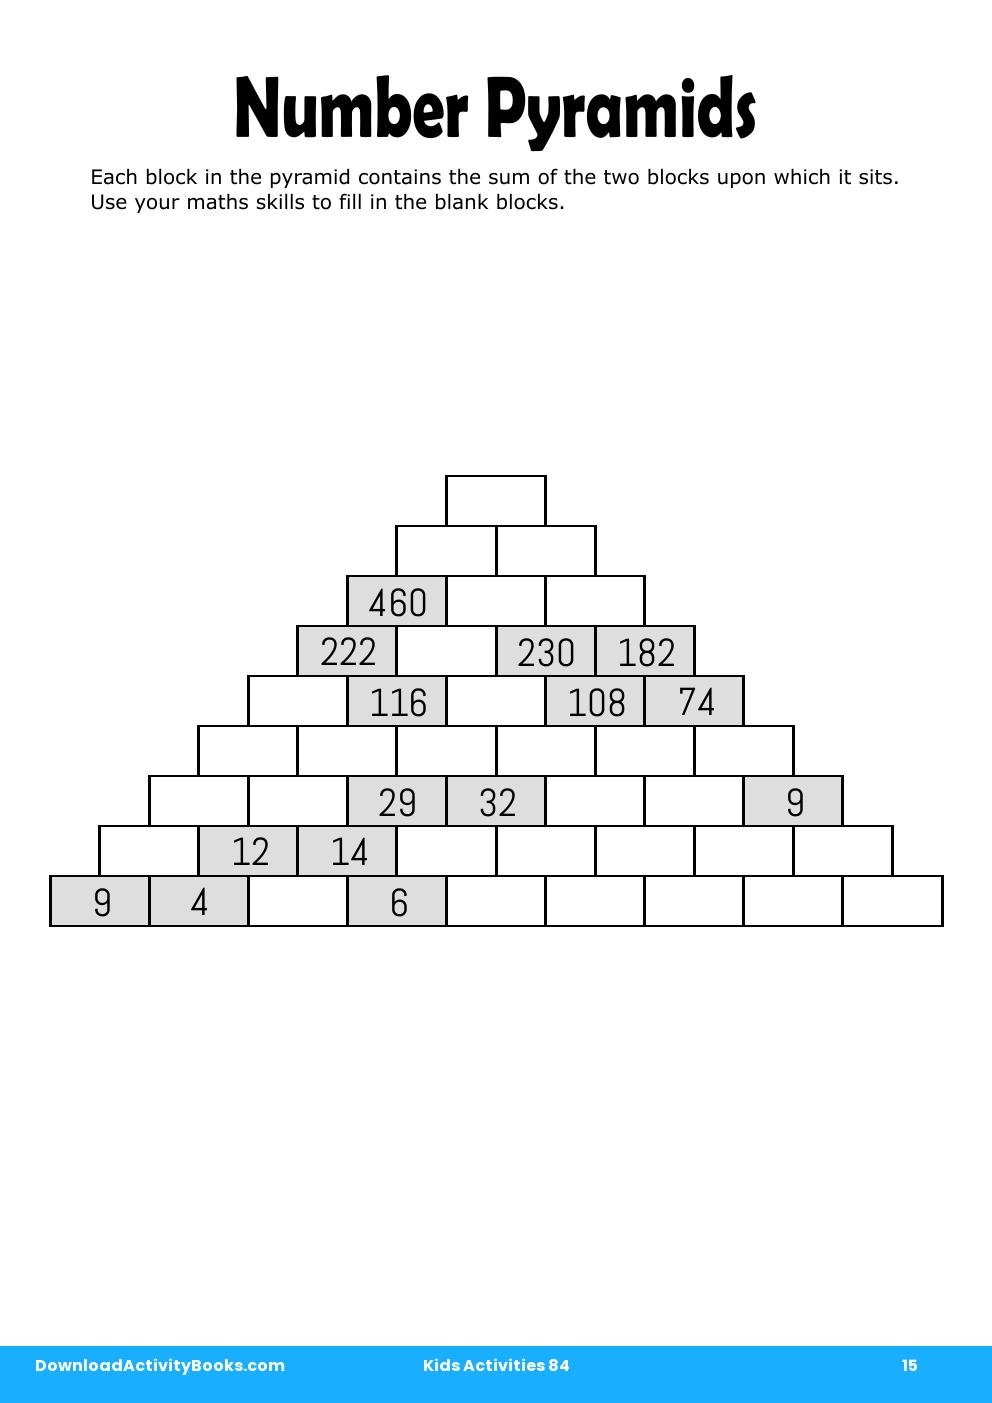 Number Pyramids in Kids Activities 84